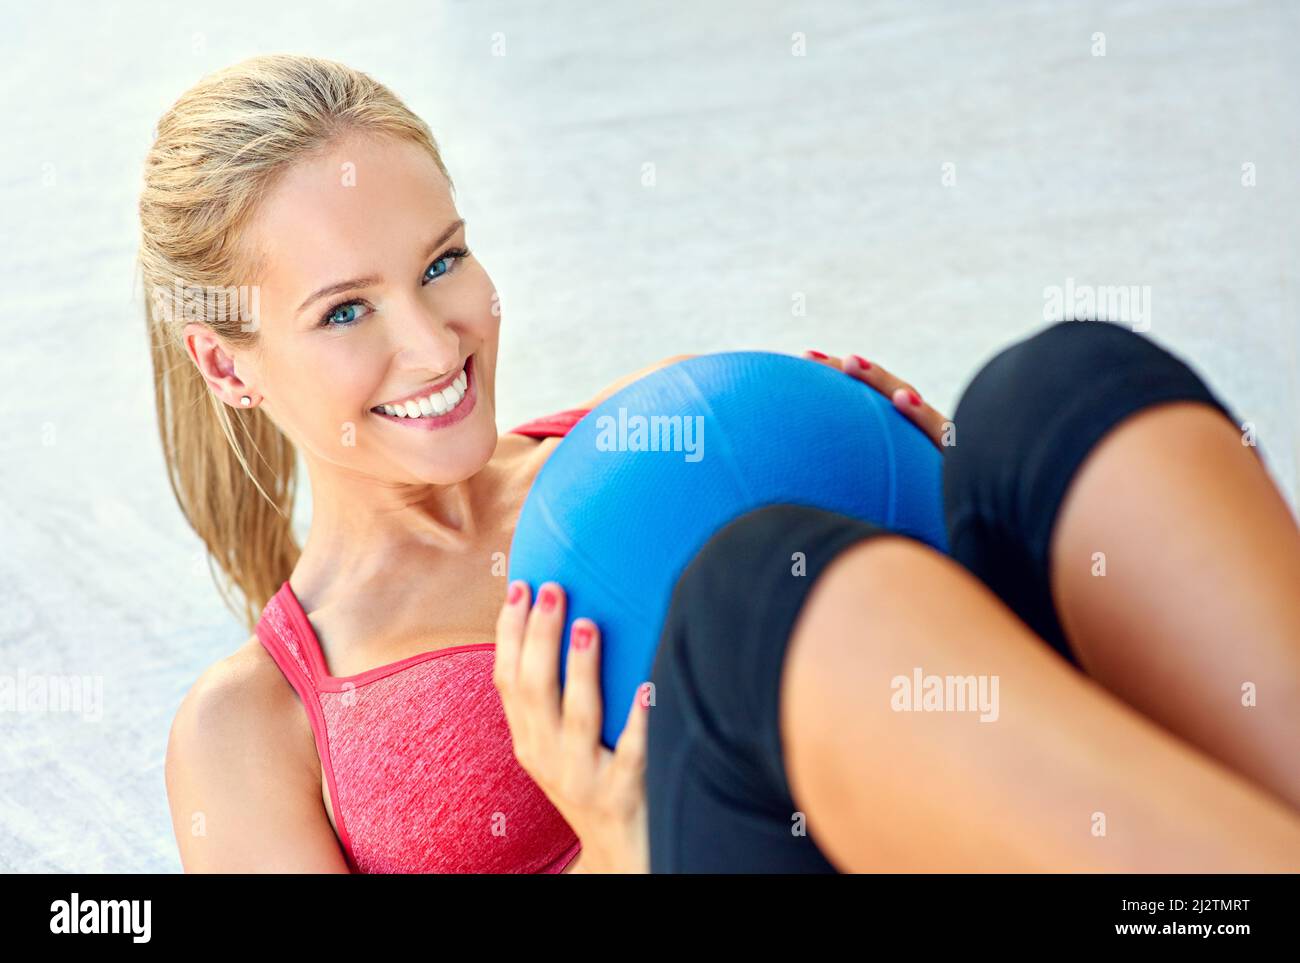 Arbeite diesen Körper. Beschnittenes Porträt einer jungen Frau, die mit einem Medizinball arbeitet. Stockfoto